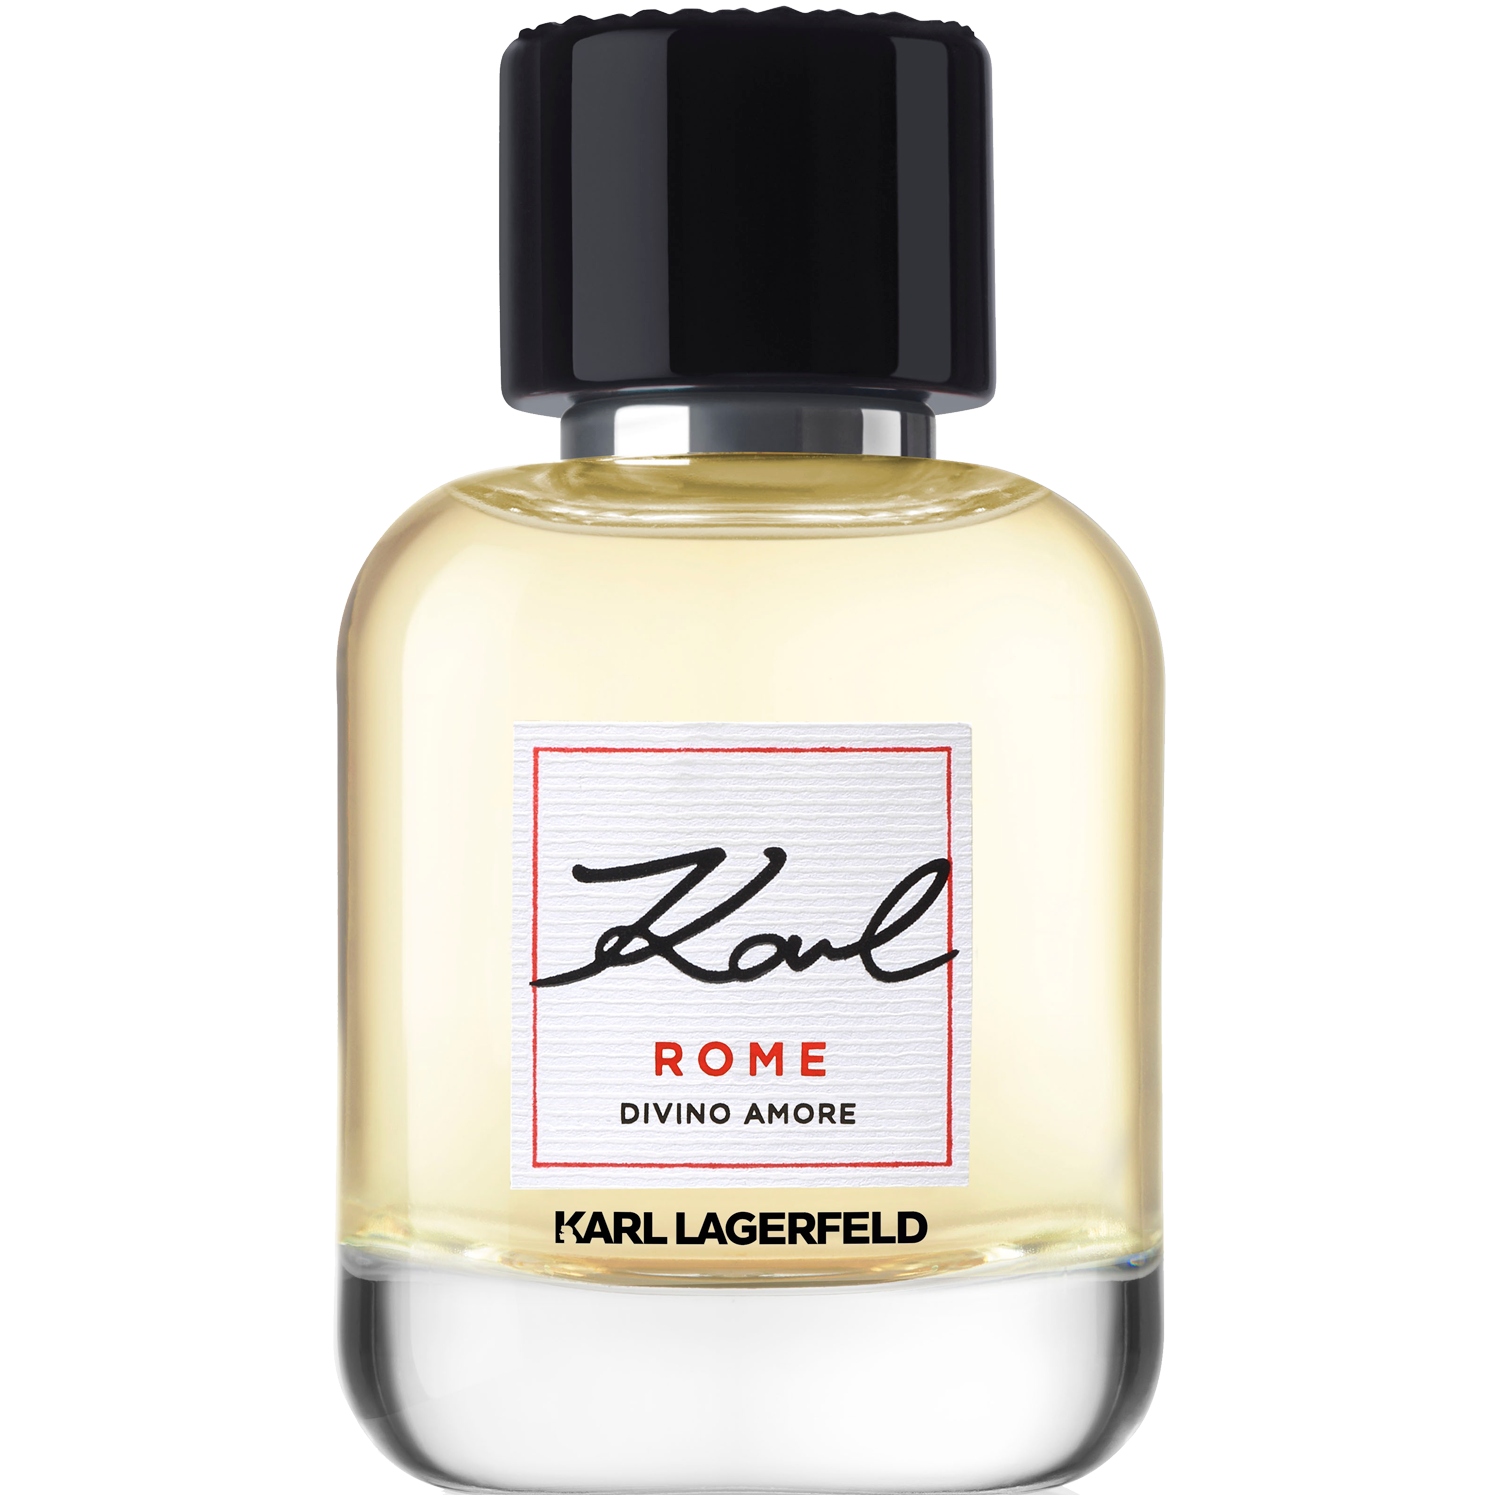 Женская парфюмированная вода Karl Lagerfeld Rome Divino Amore, 60 мл в городе интересная прогулка колкер м